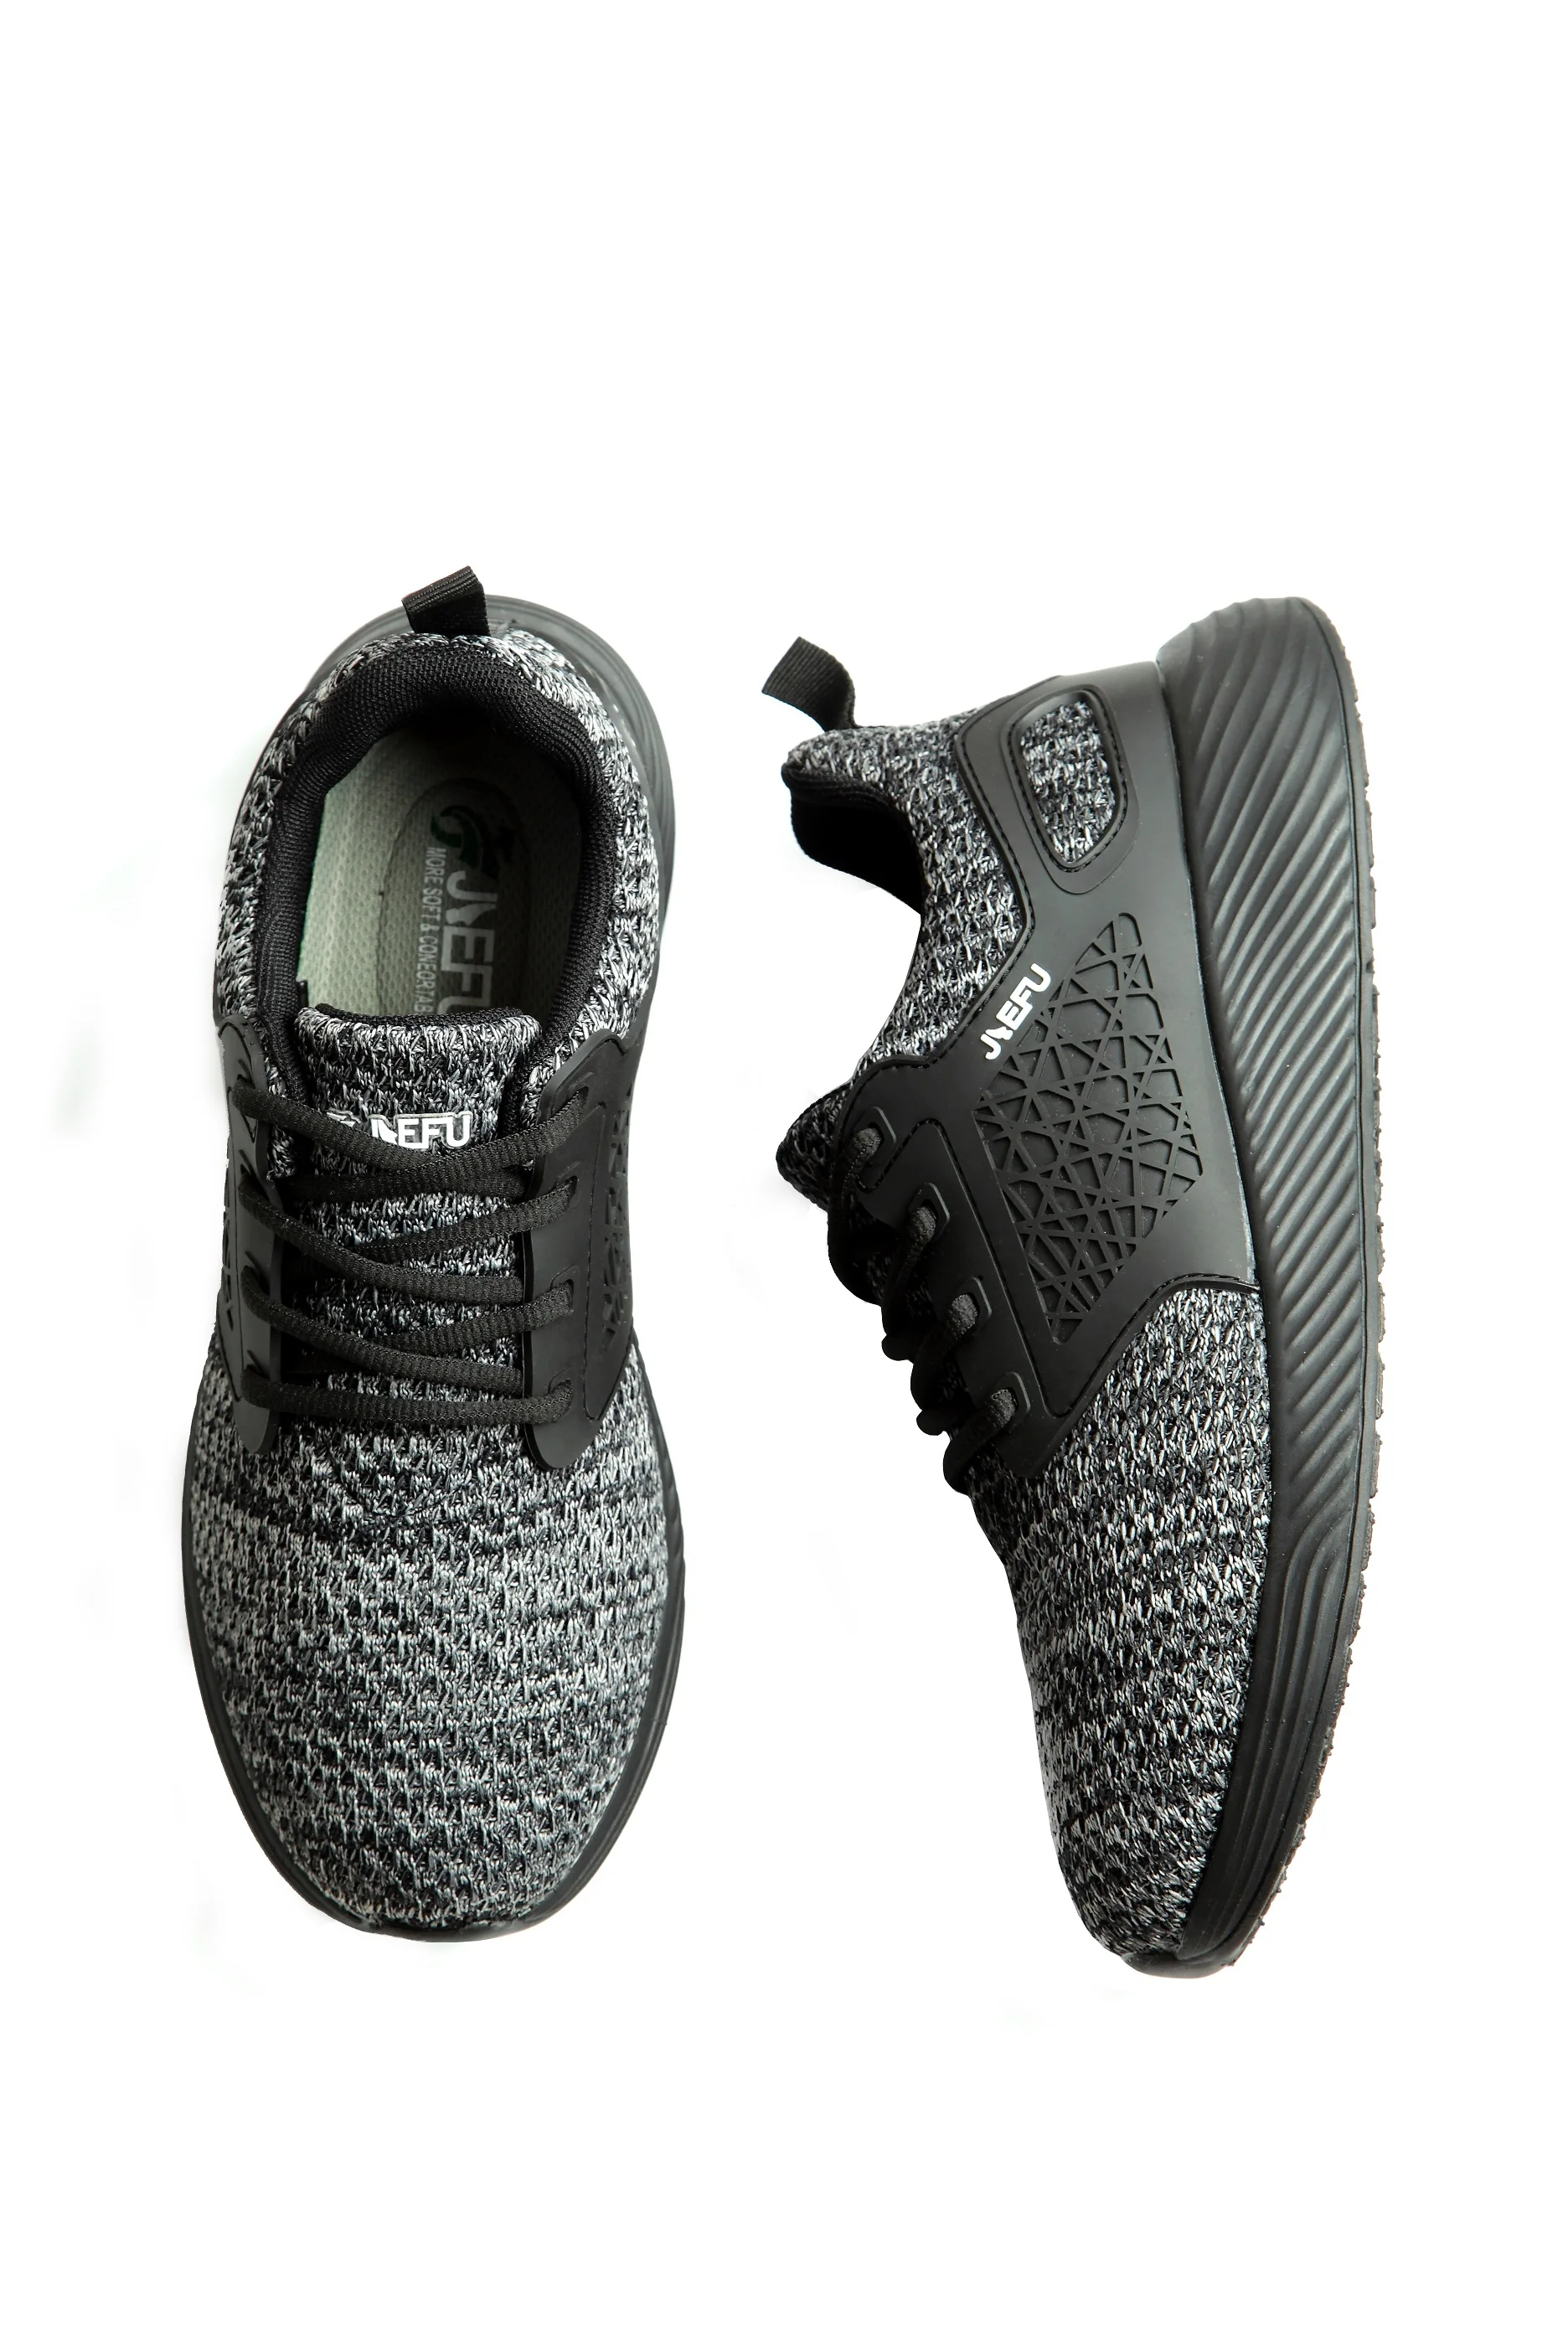 MWSC/защитная Рабочая обувь для мужчин; нескользящие рабочие ботинки со стальным носком; неразрывные защитные ботинки; мужские защитные кроссовки